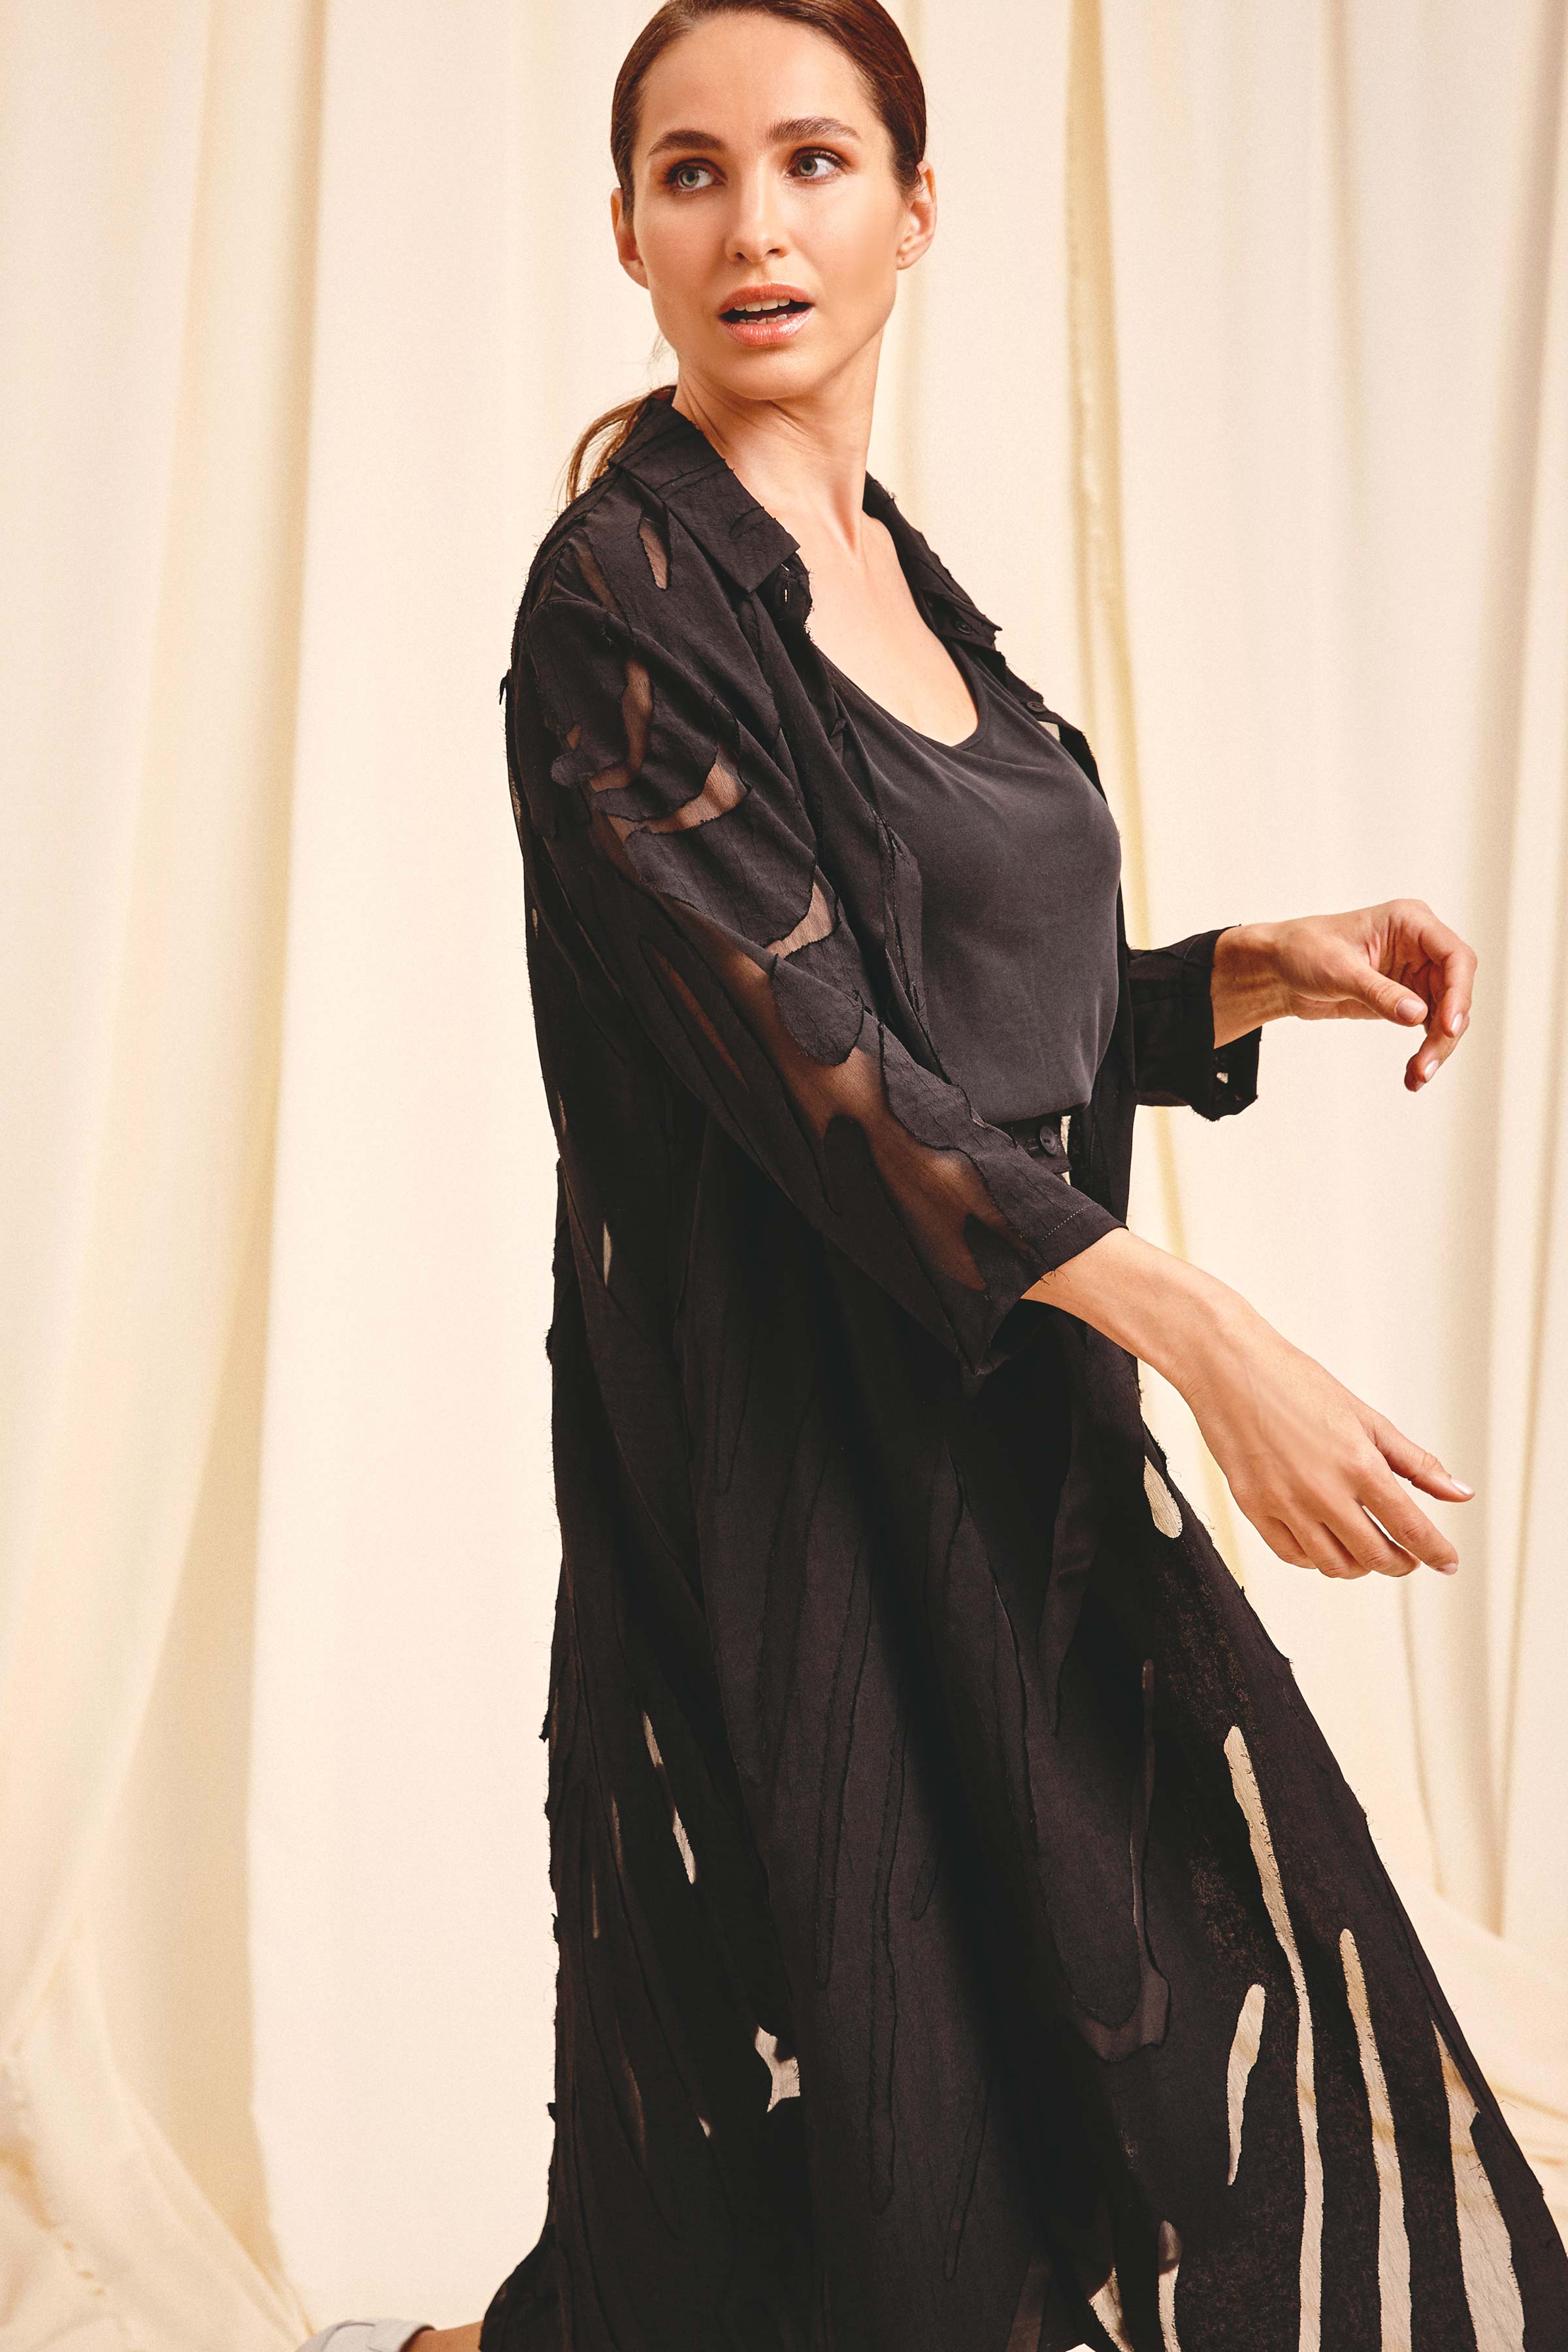 Блуза Джунгли, рубашка удлинённая 00 Черный (noir) от Lesel (Лесель)! Заказывайте по ✆ 8 (800) 777 02 37